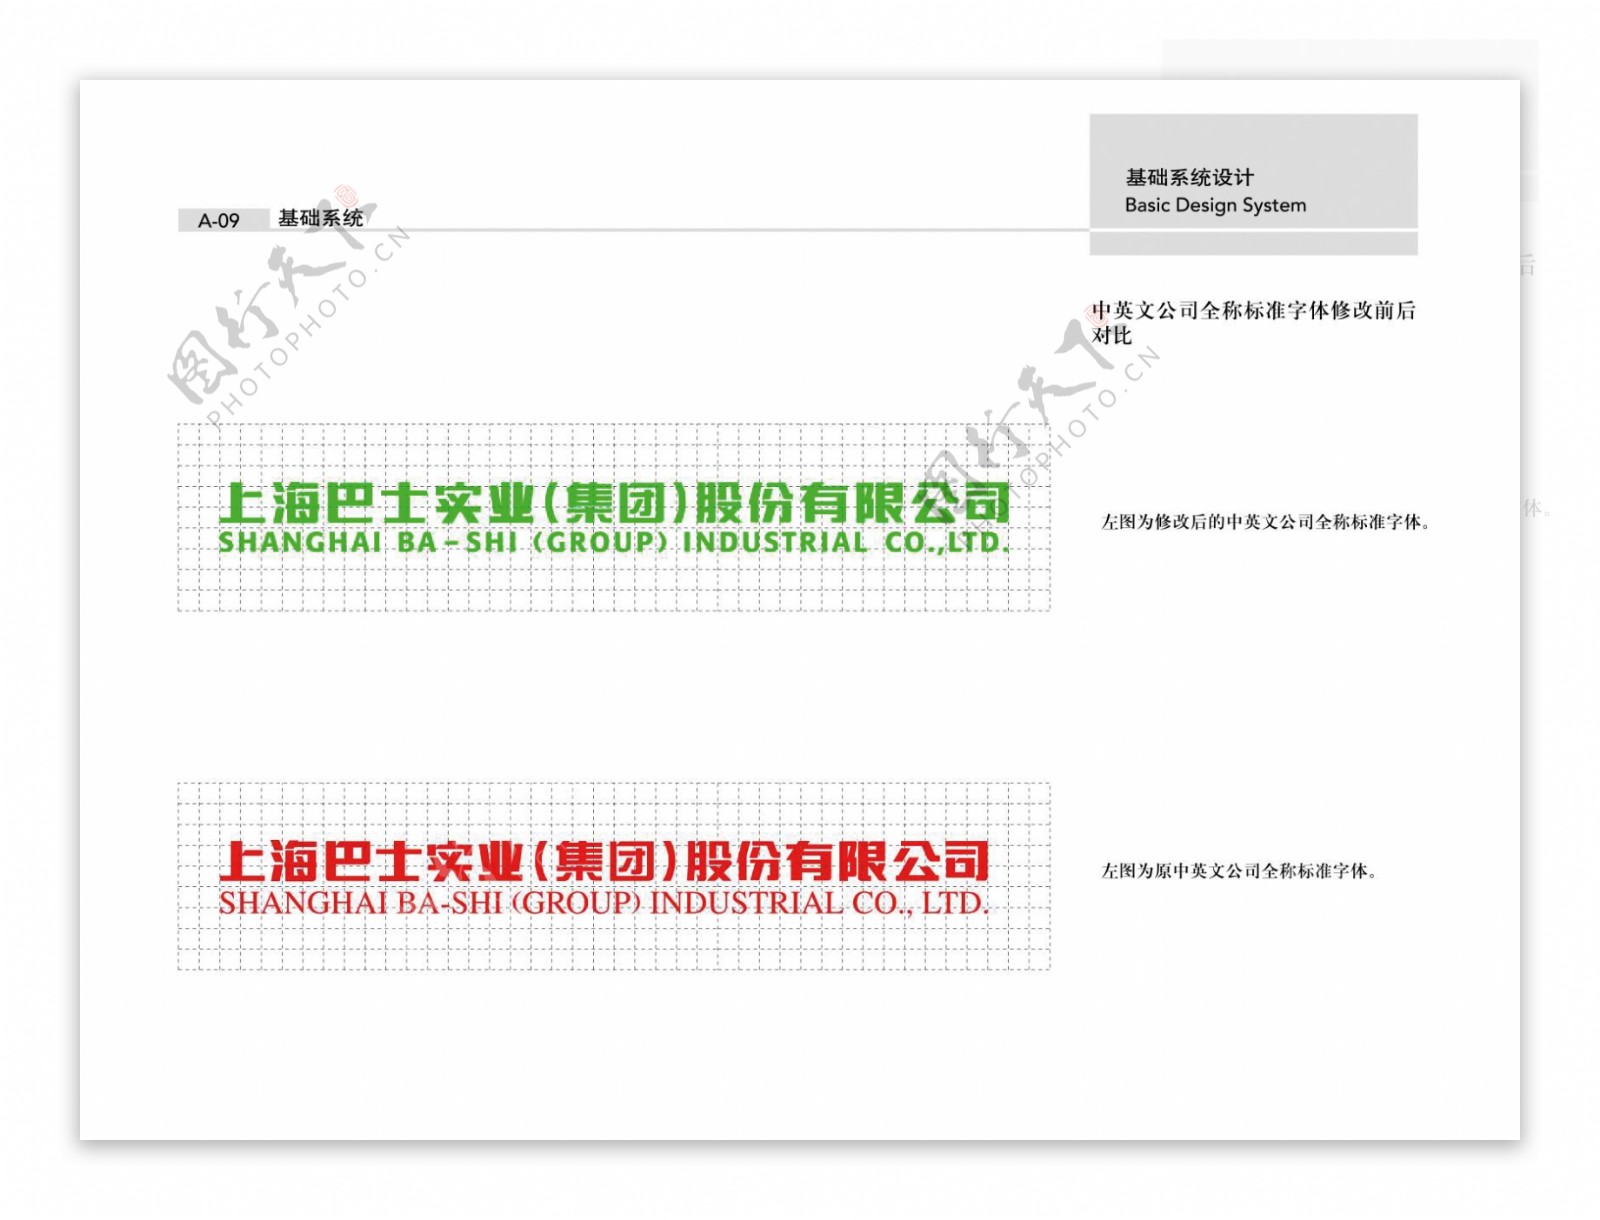 上海巴士欣赏全套欣赏模板设计模板手册品牌形象推广手册欣赏推广手册广告设计设计办公用品视觉形象系统基础系统注明文件JPG格式